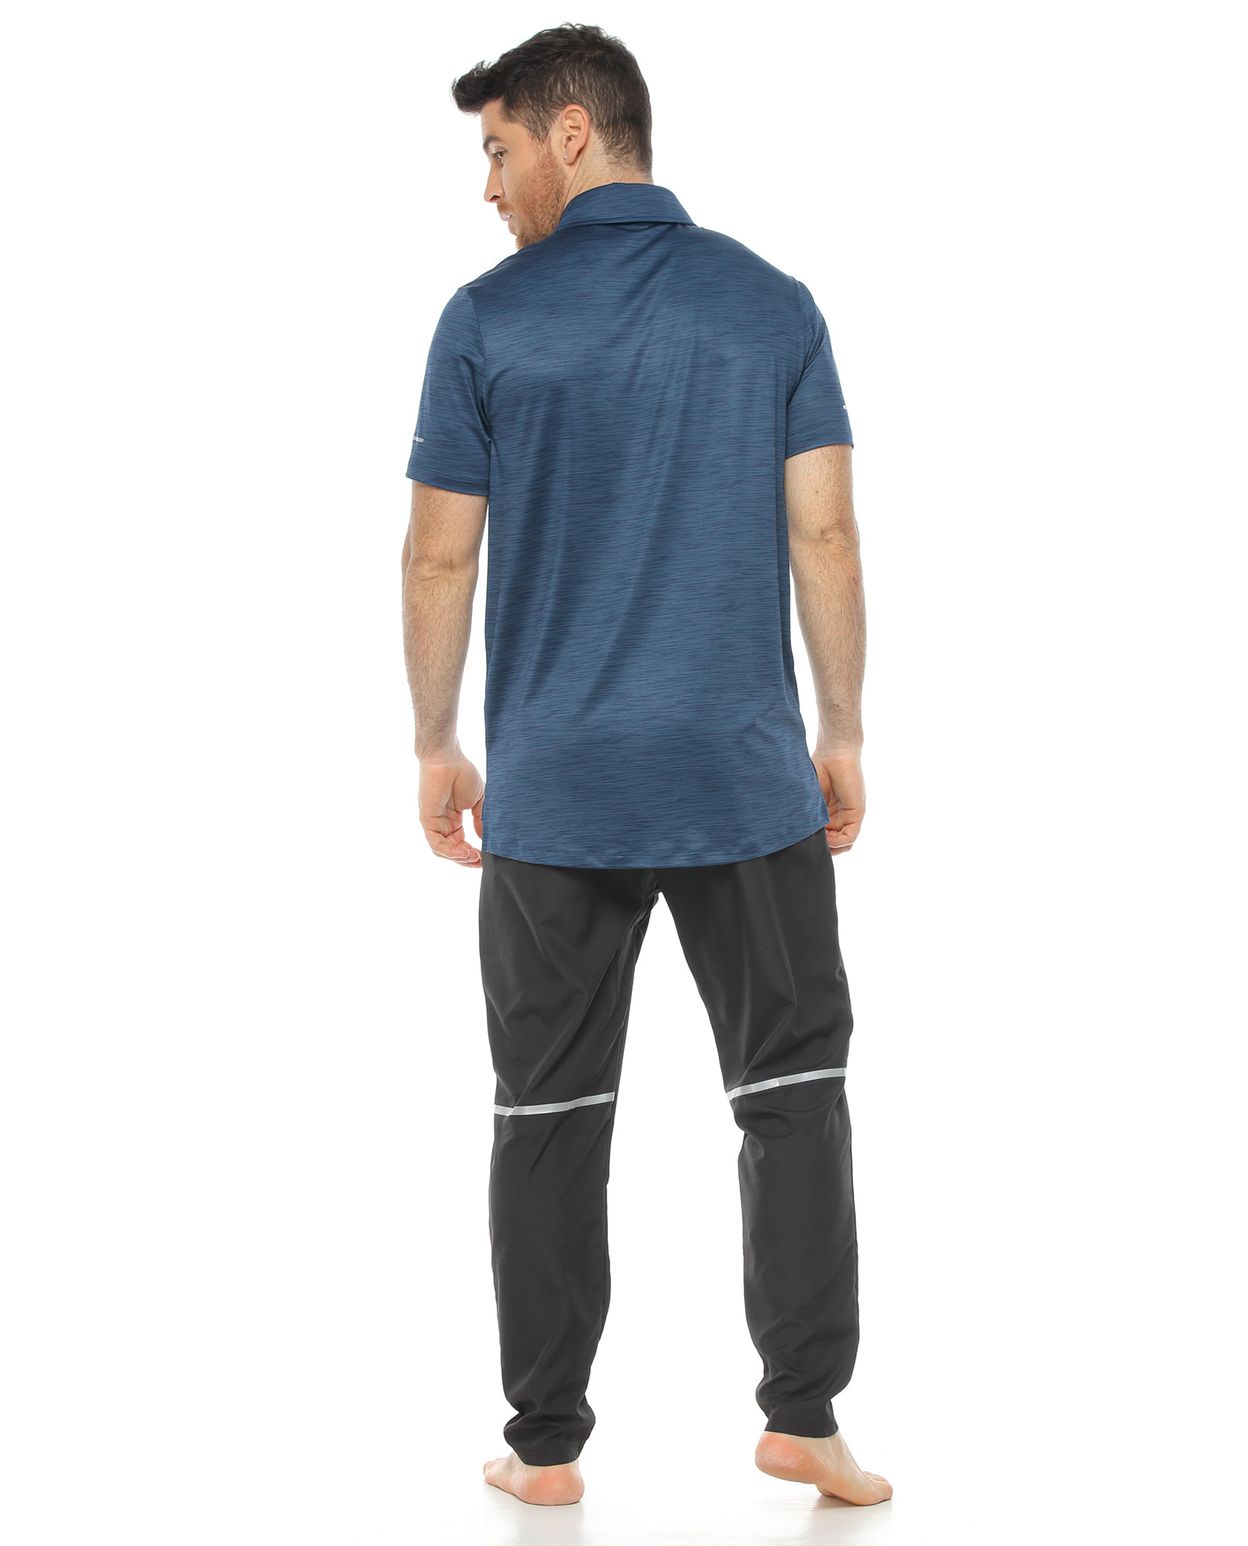 modelo con Pantalón Deportivo Semi Ajustado Negro y camiseta tipo polo para Hombre parte trasera